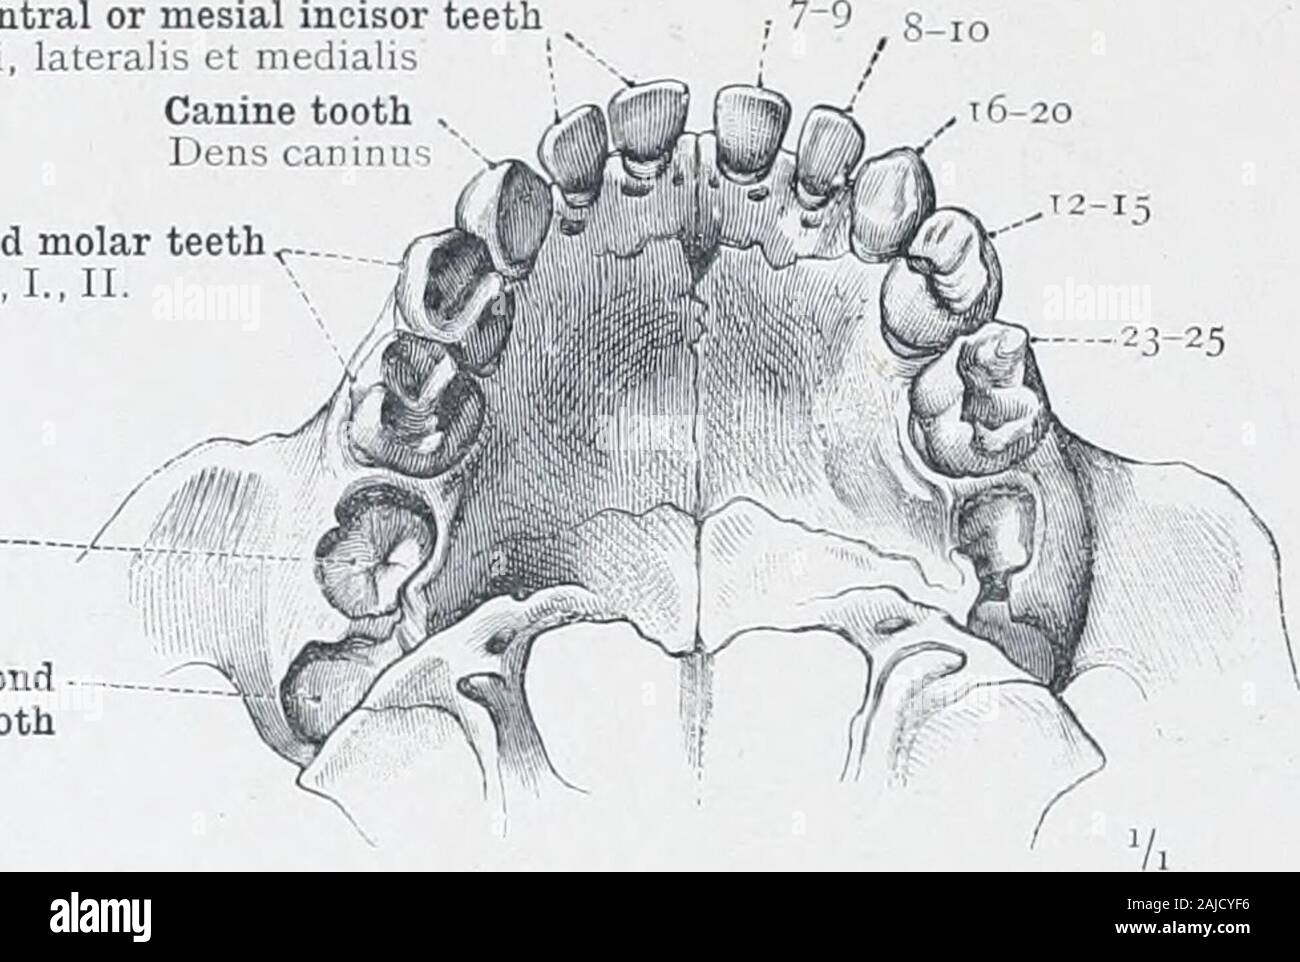 Un atlas de l'anatomie humaine pour les étudiants et les médecins . Central supérieur ou inférieur Deuxième mésiale pre-Dens incisive molaire ou inci- sivus bicuspides, superior medialis - dents Dens molaris pr/E- moins II. La deuxième molaire ou pré-bicuspidtooth^ - Dens molaris pr-supérieur II. Pulp-cavité Cavum dentis tubercules ou cuspsof corotiic • la couronne Tubercula denti ; première dent supérieure /imolar-Dens molarissuperior I. Fig. 694-Pulp-Cavity Pulp-Canal. et comme vu dans les dents divisé longitudinalement. ^^ également connu = meules ou multicuspids. - Voir note - à la p. 426. Dentes-dents. 54-2428 ET DU COL DE L'encéphale des P Banque D'Images